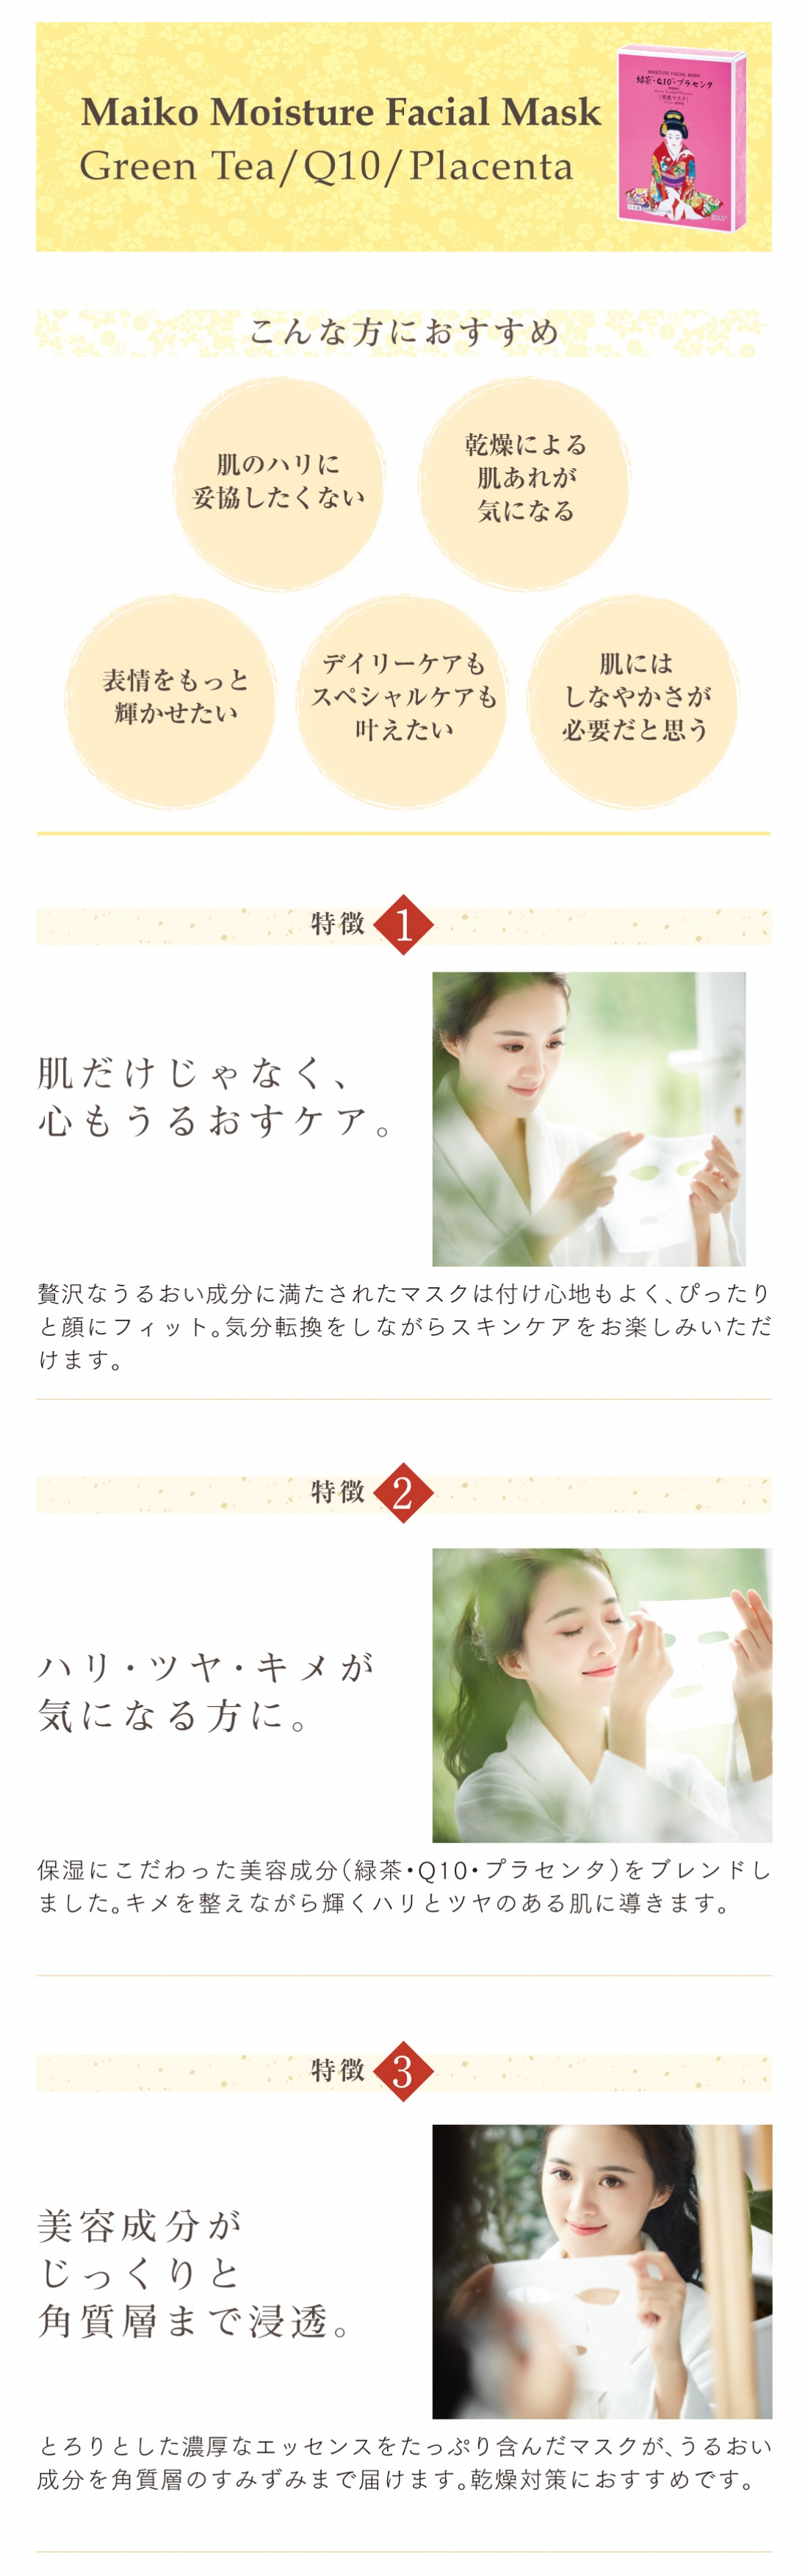 舞妓マスク 緑茶・Q10・プラセンタ
Maiko Moisture Facial Mask Green Tea/Q10/Placenta